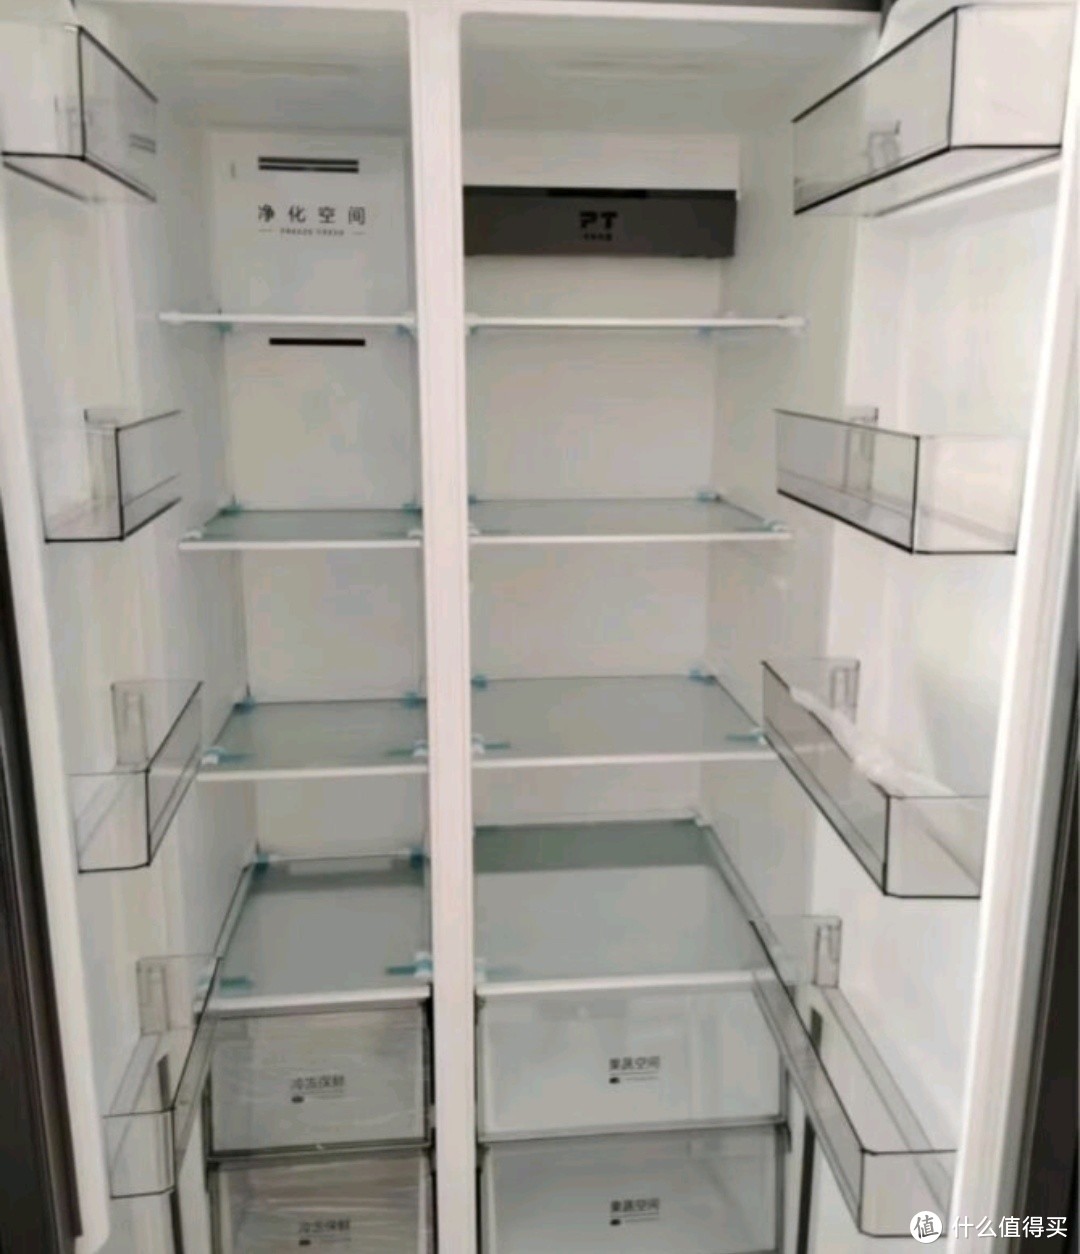 美的智能冰箱，一键搞定食材管理！